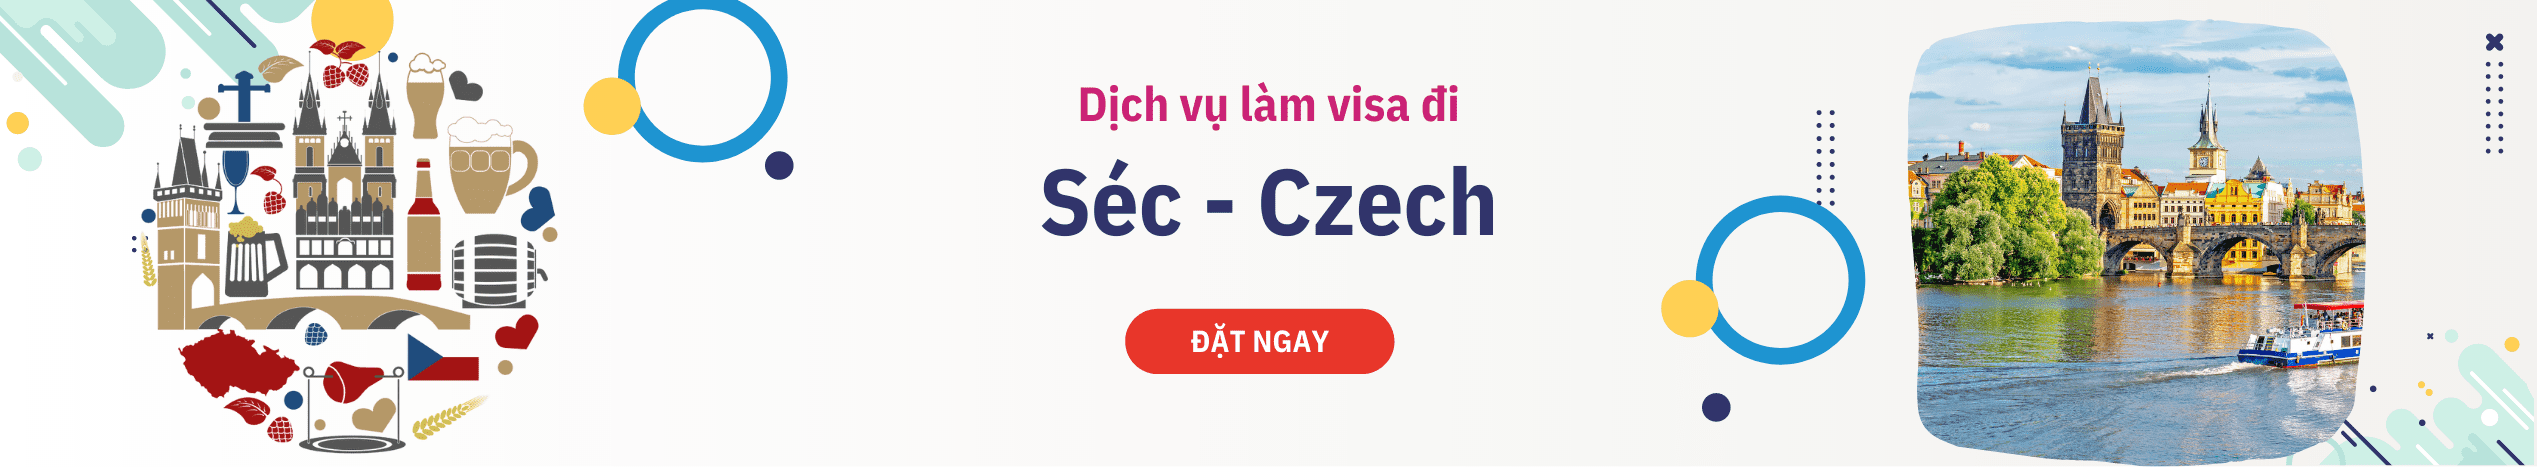 Hỗ trợ tư vấn xin Visa Séc du lịch & công tác